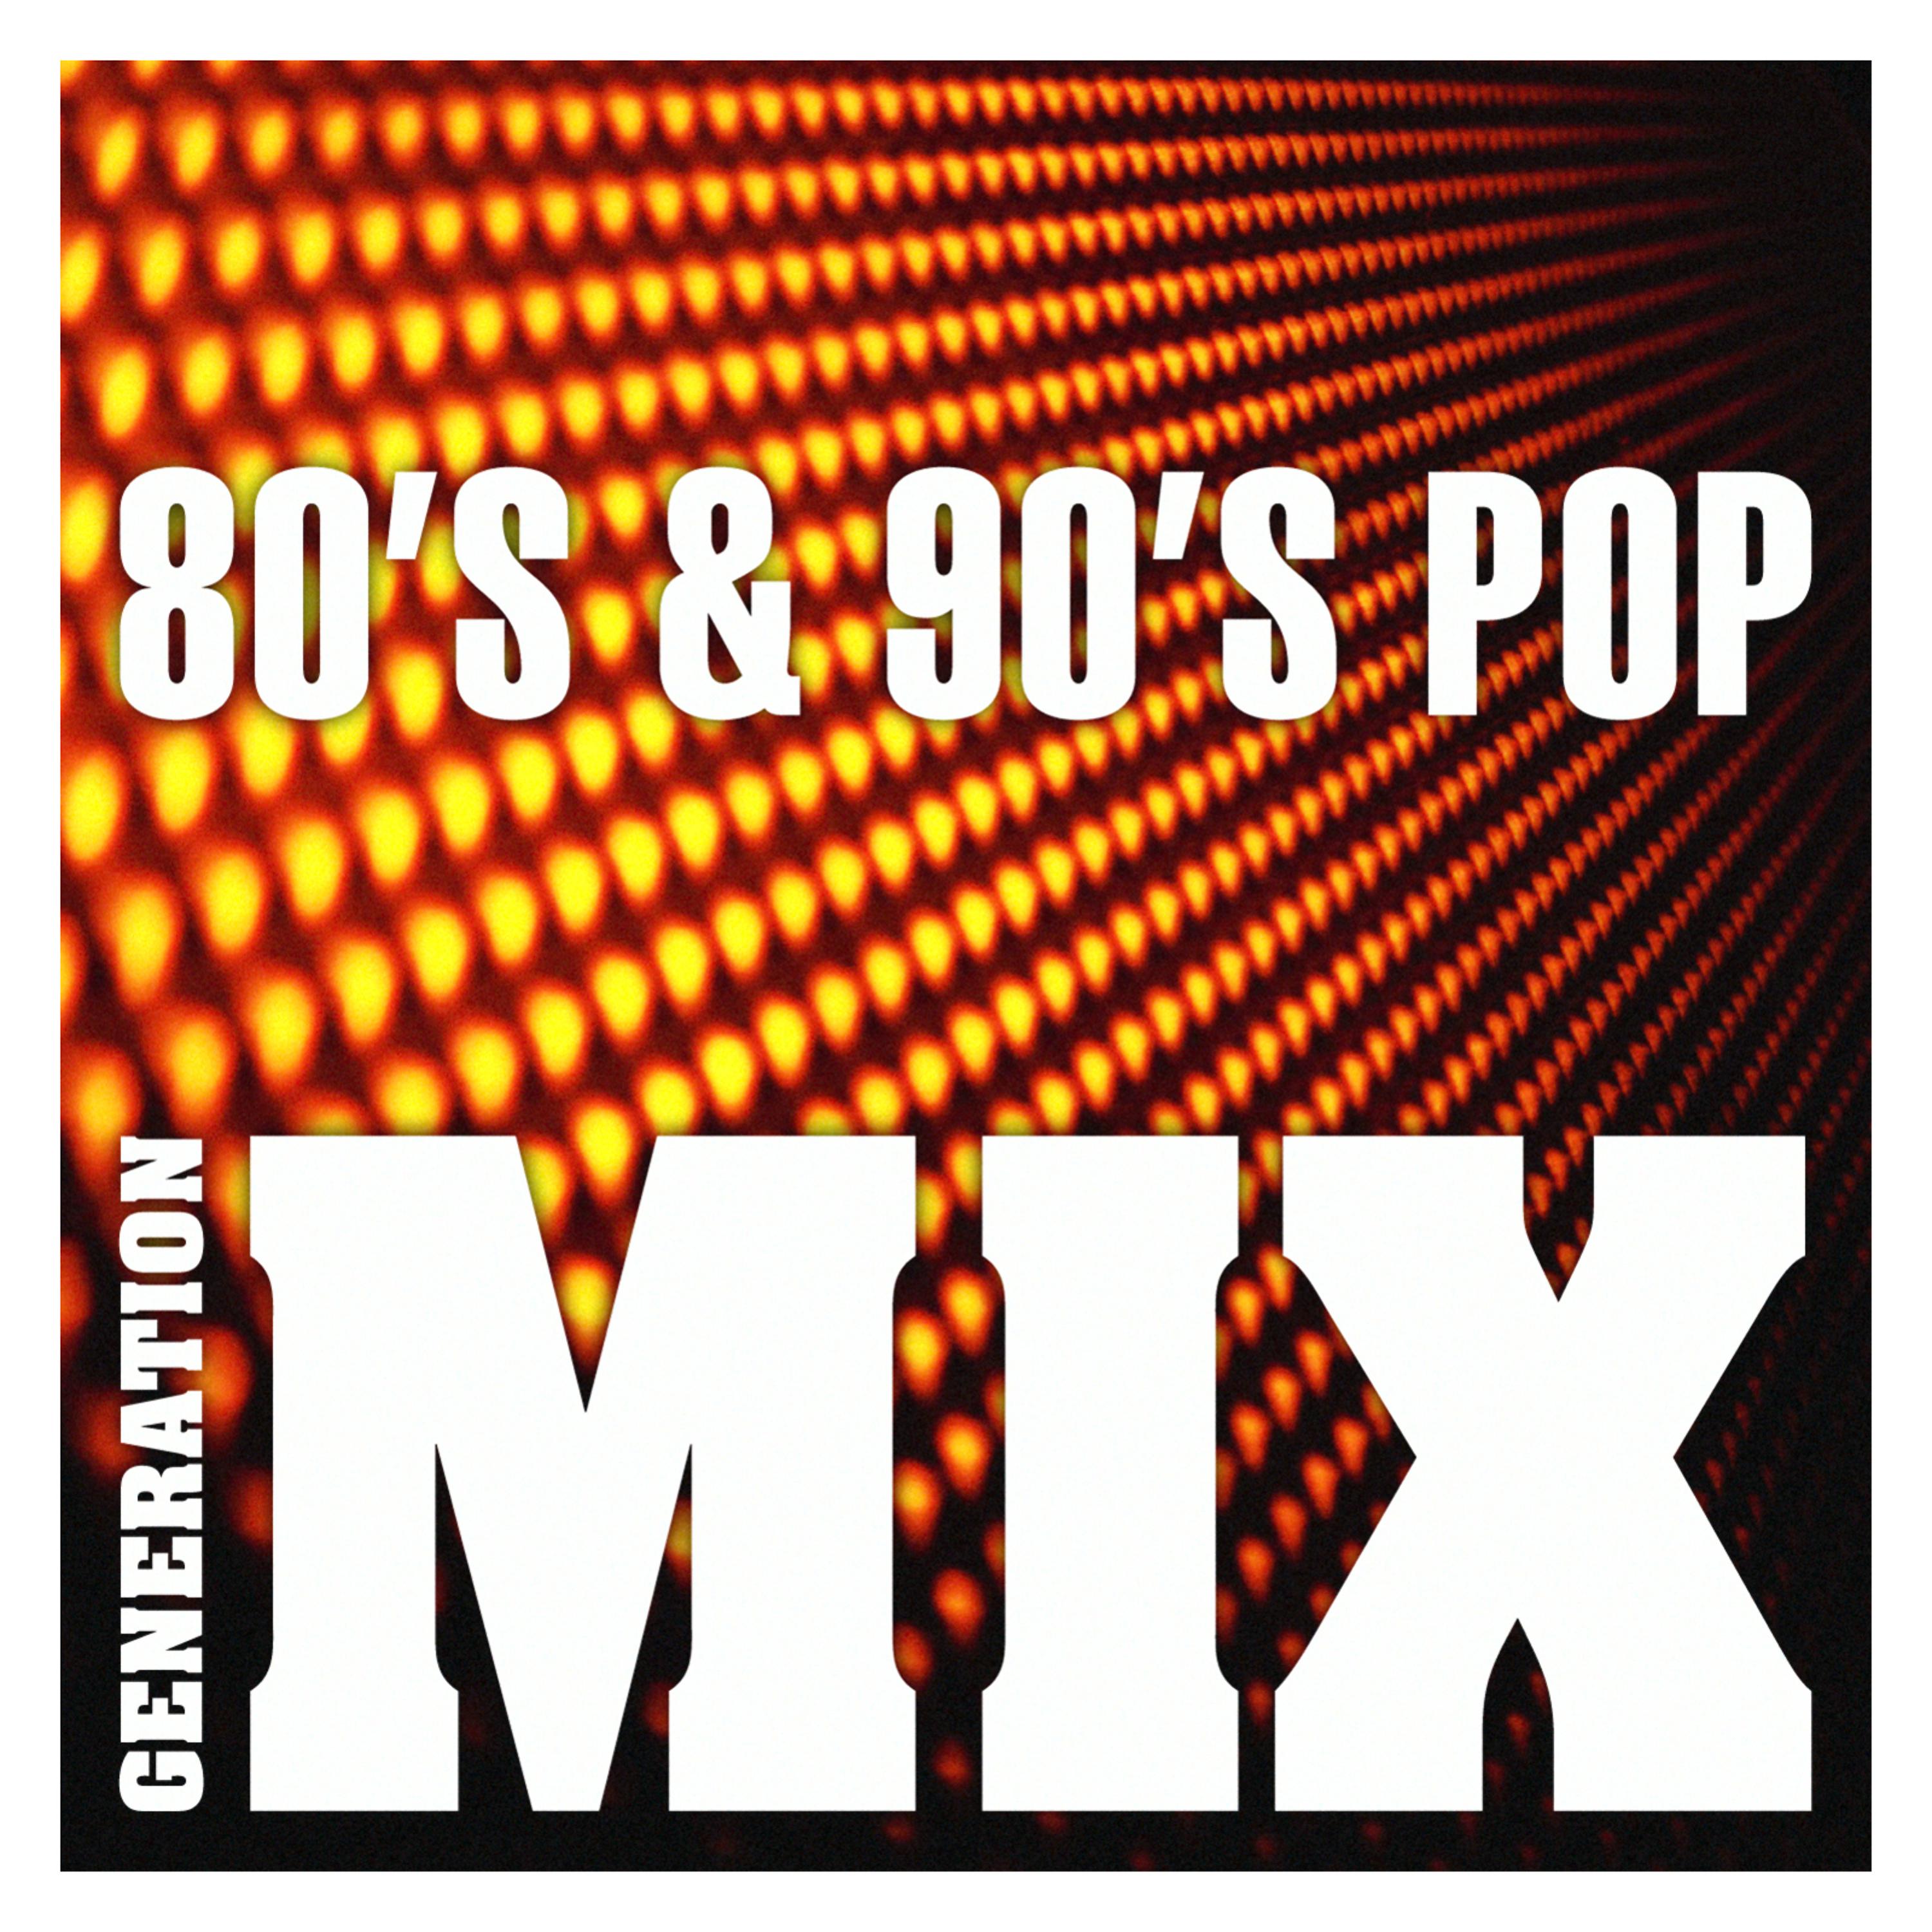 Музыка слушать ремиксы современные. Ремиксы 80-90. Ремиксы 80-90 в современной обработке. Mix 80s. 7 Seconds 90s Pop.